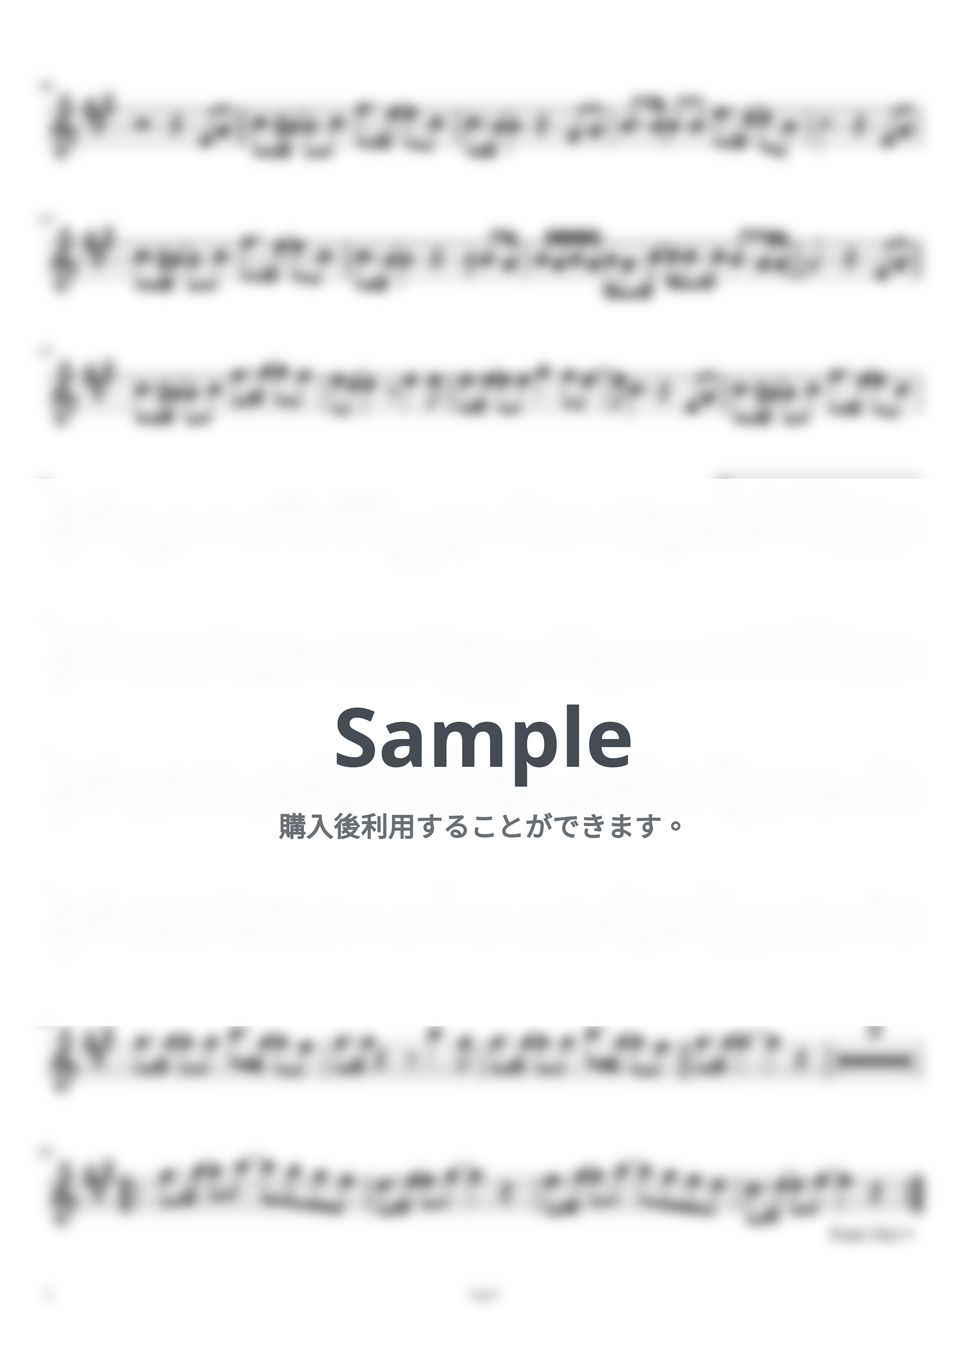 サザンオールスターズ - 勝手にシンドバッド by ayako music school